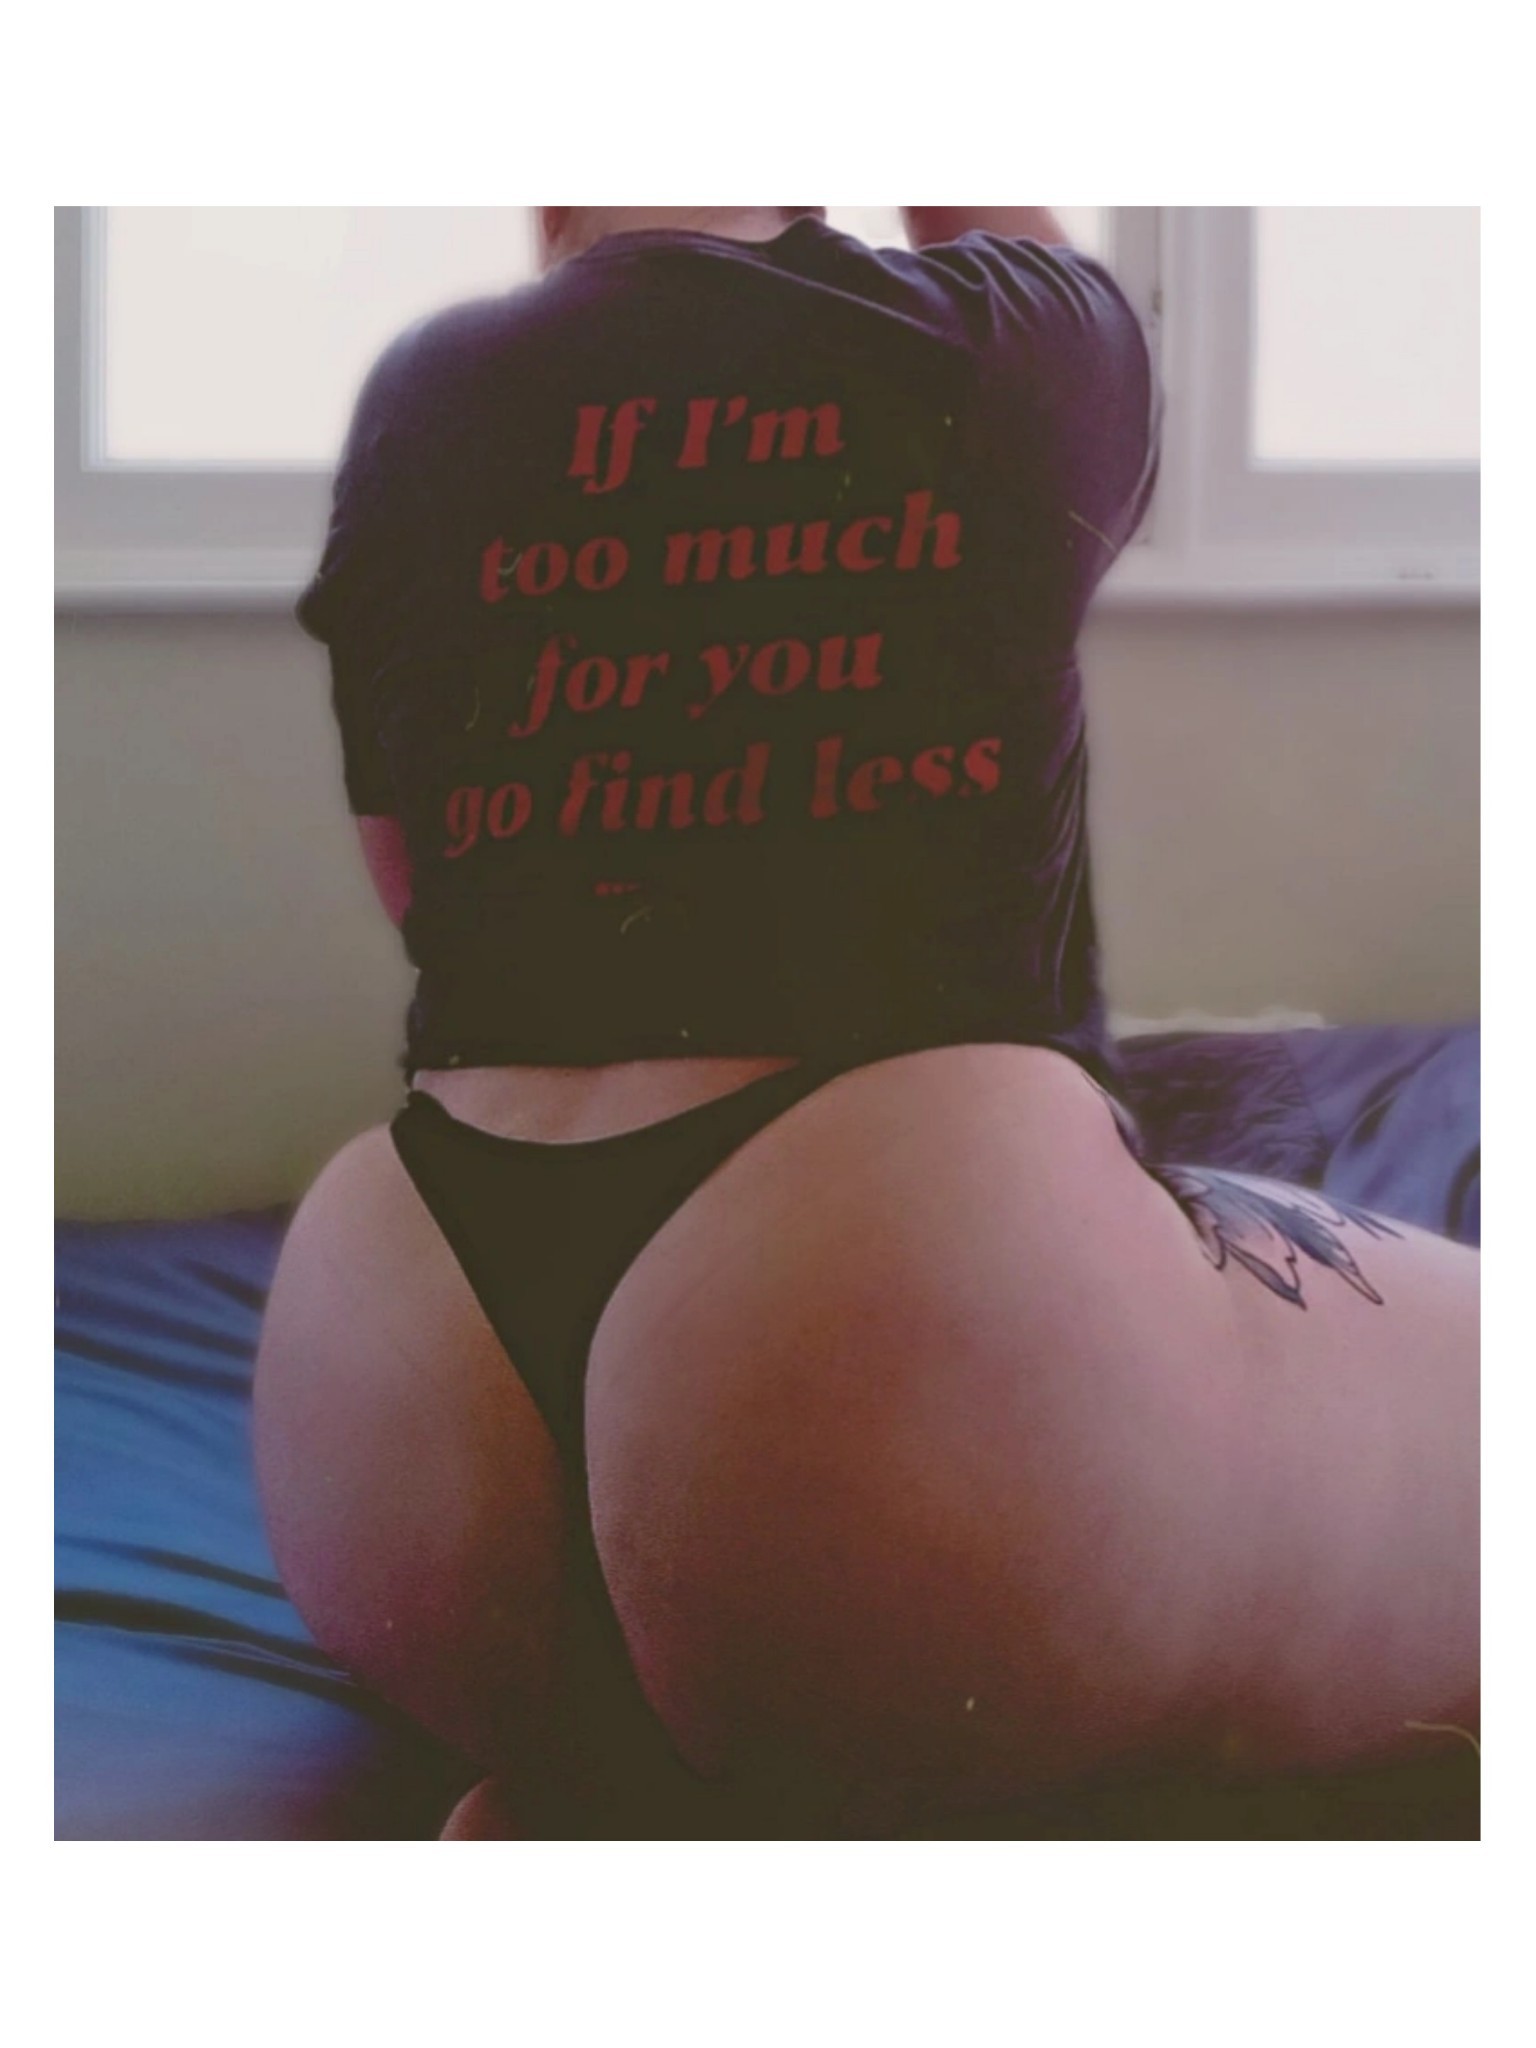 Porn Pics miss–b:“go find less” 🖤